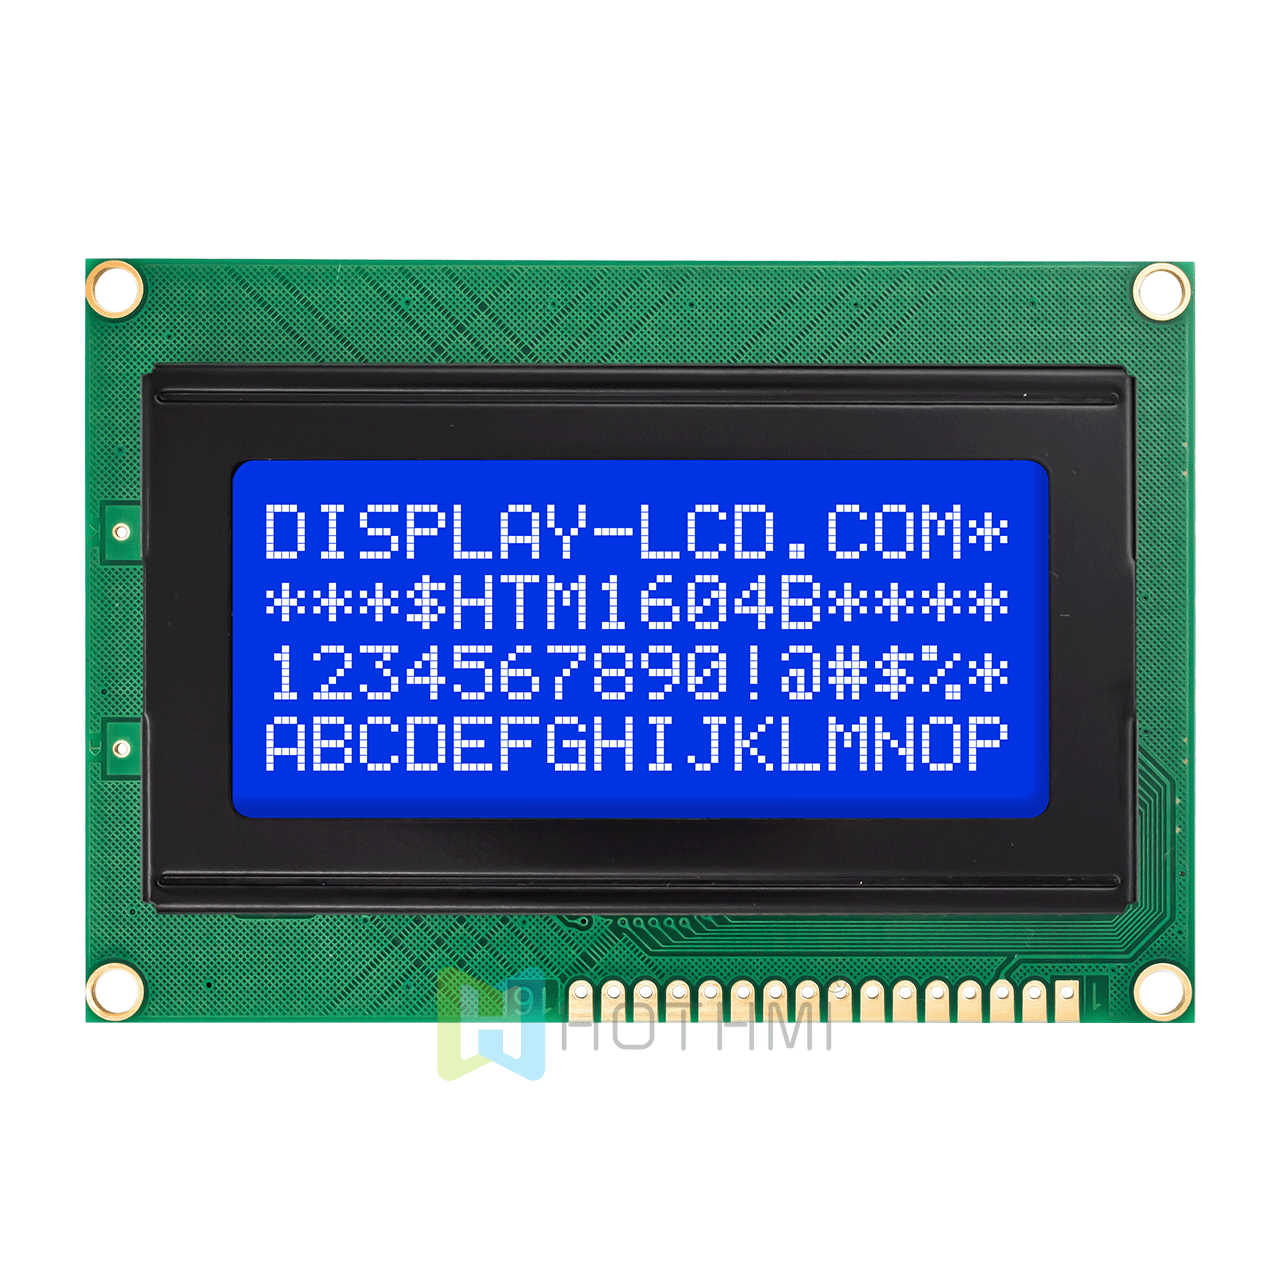 4x16 字符 LCD模组 | STN(-) 白色侧背光单色显示屏 | Arduino | MCU接口 | ST7066U控制器| 全透反射| 蓝底白字